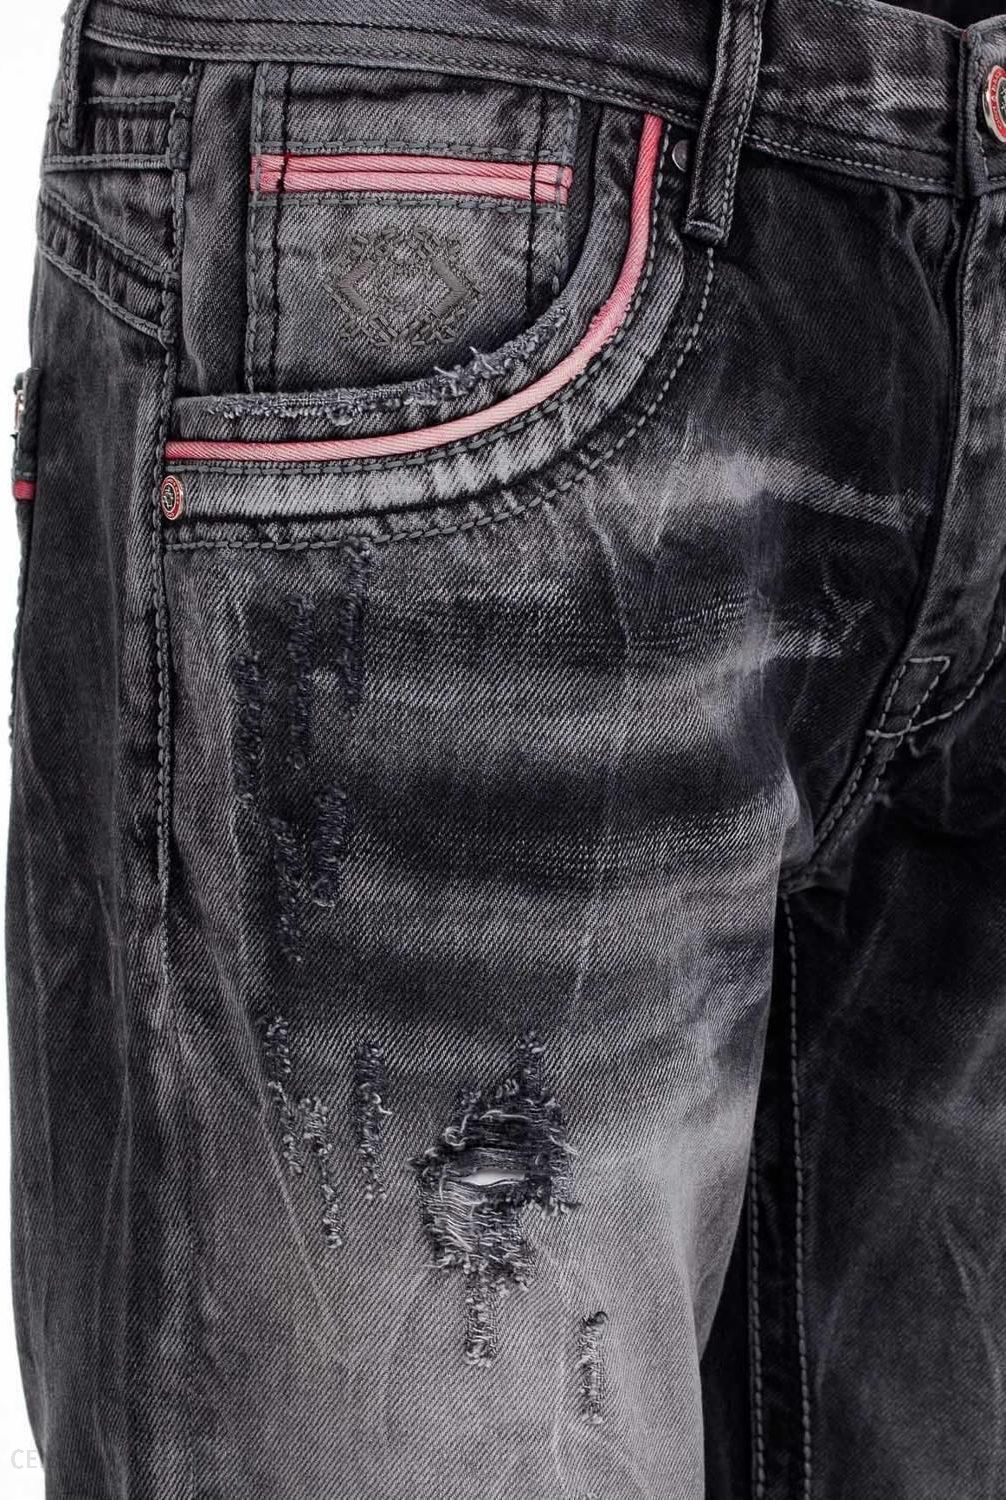 Spodnie jeansowe męskie DENIM CIPO & BAXX CD696 BLACK